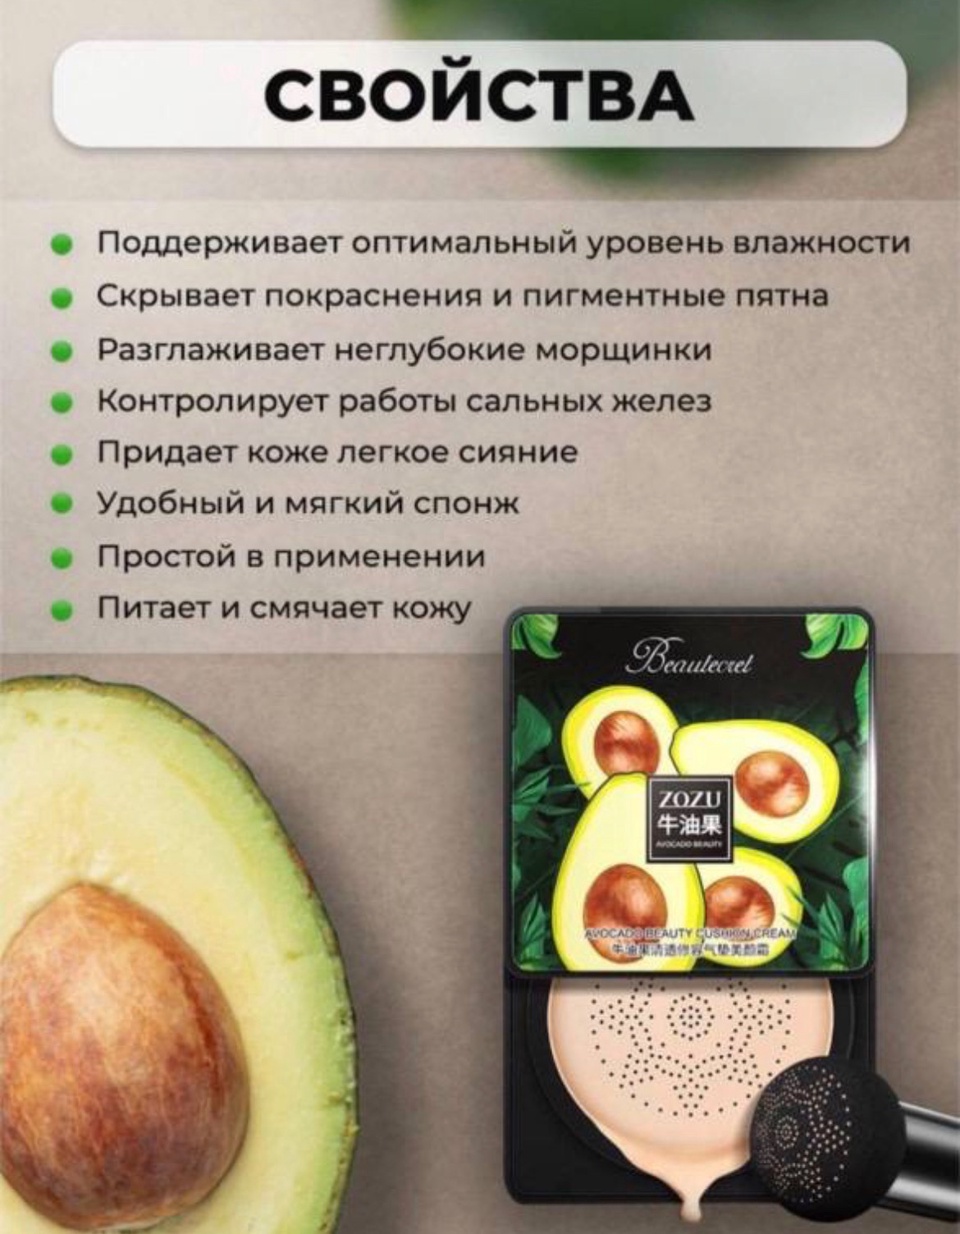 Кушон - тональный крем с экстрактом авокадо ZOZU - 230 ₽, заказать онлайн.